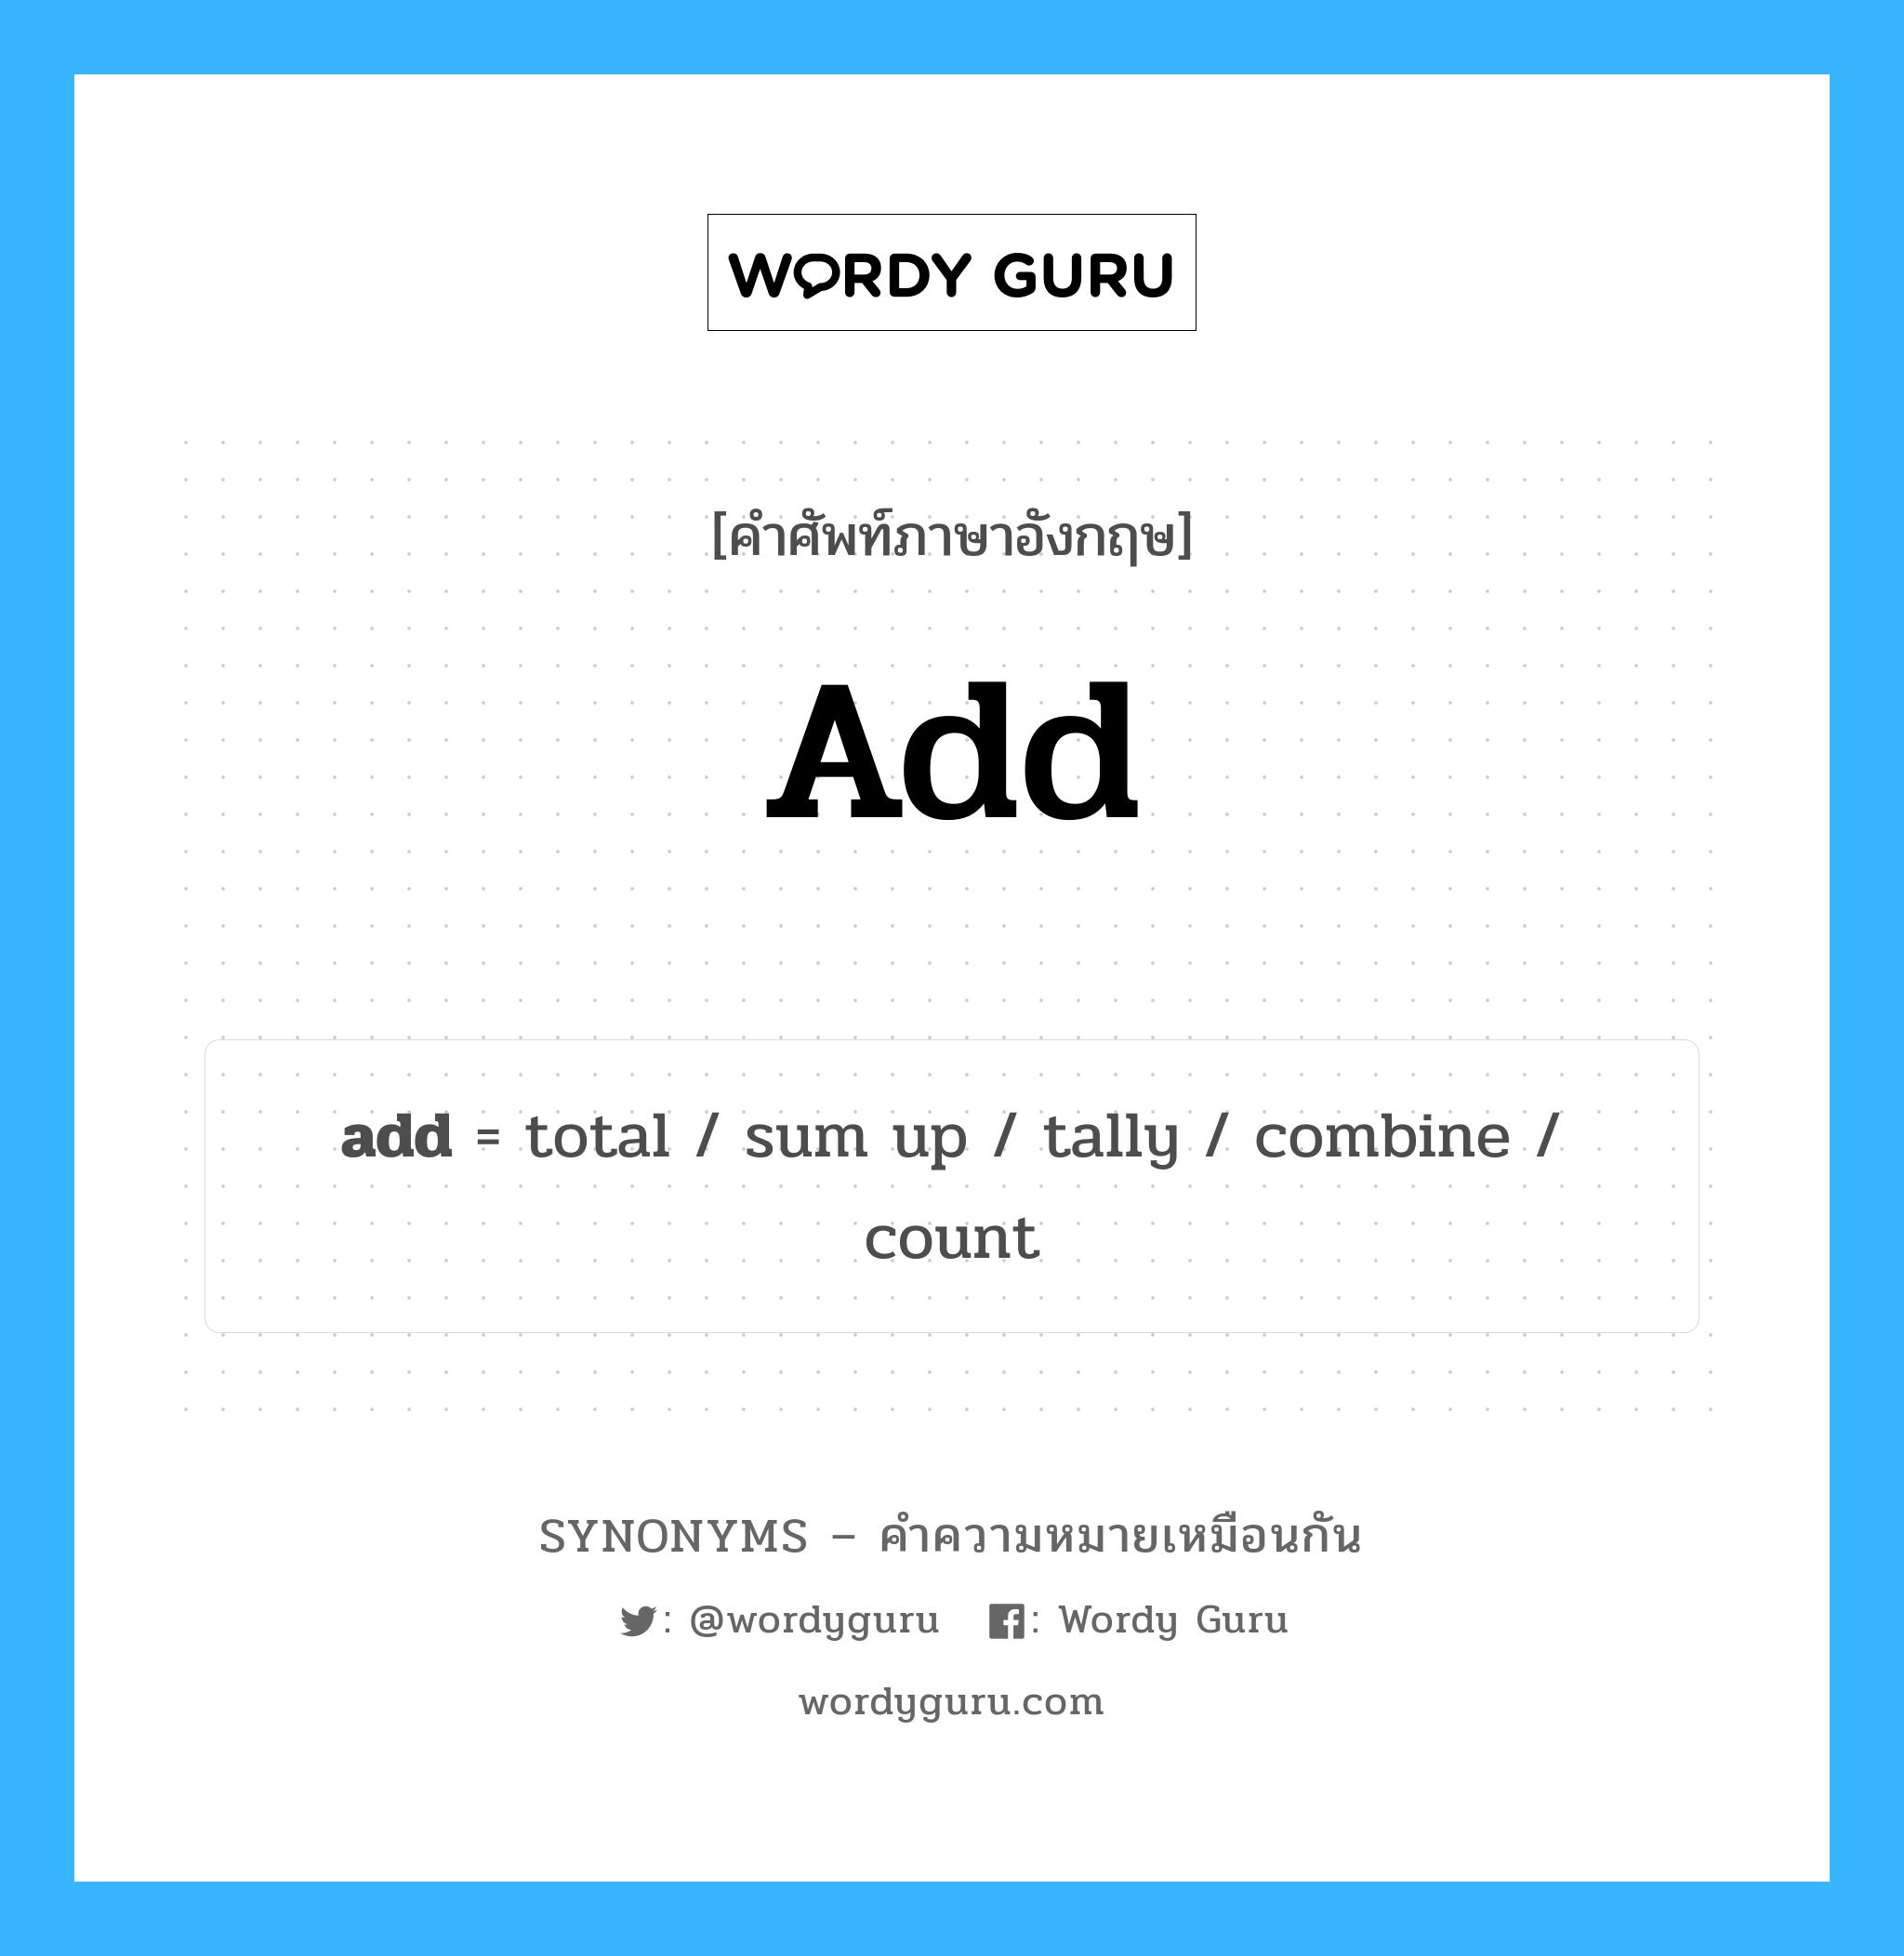 combine เป็นหนึ่งใน add และมีคำอื่น ๆ อีกดังนี้, คำศัพท์ภาษาอังกฤษ combine ความหมายคล้ายกันกับ add แปลว่า รวม หมวด add